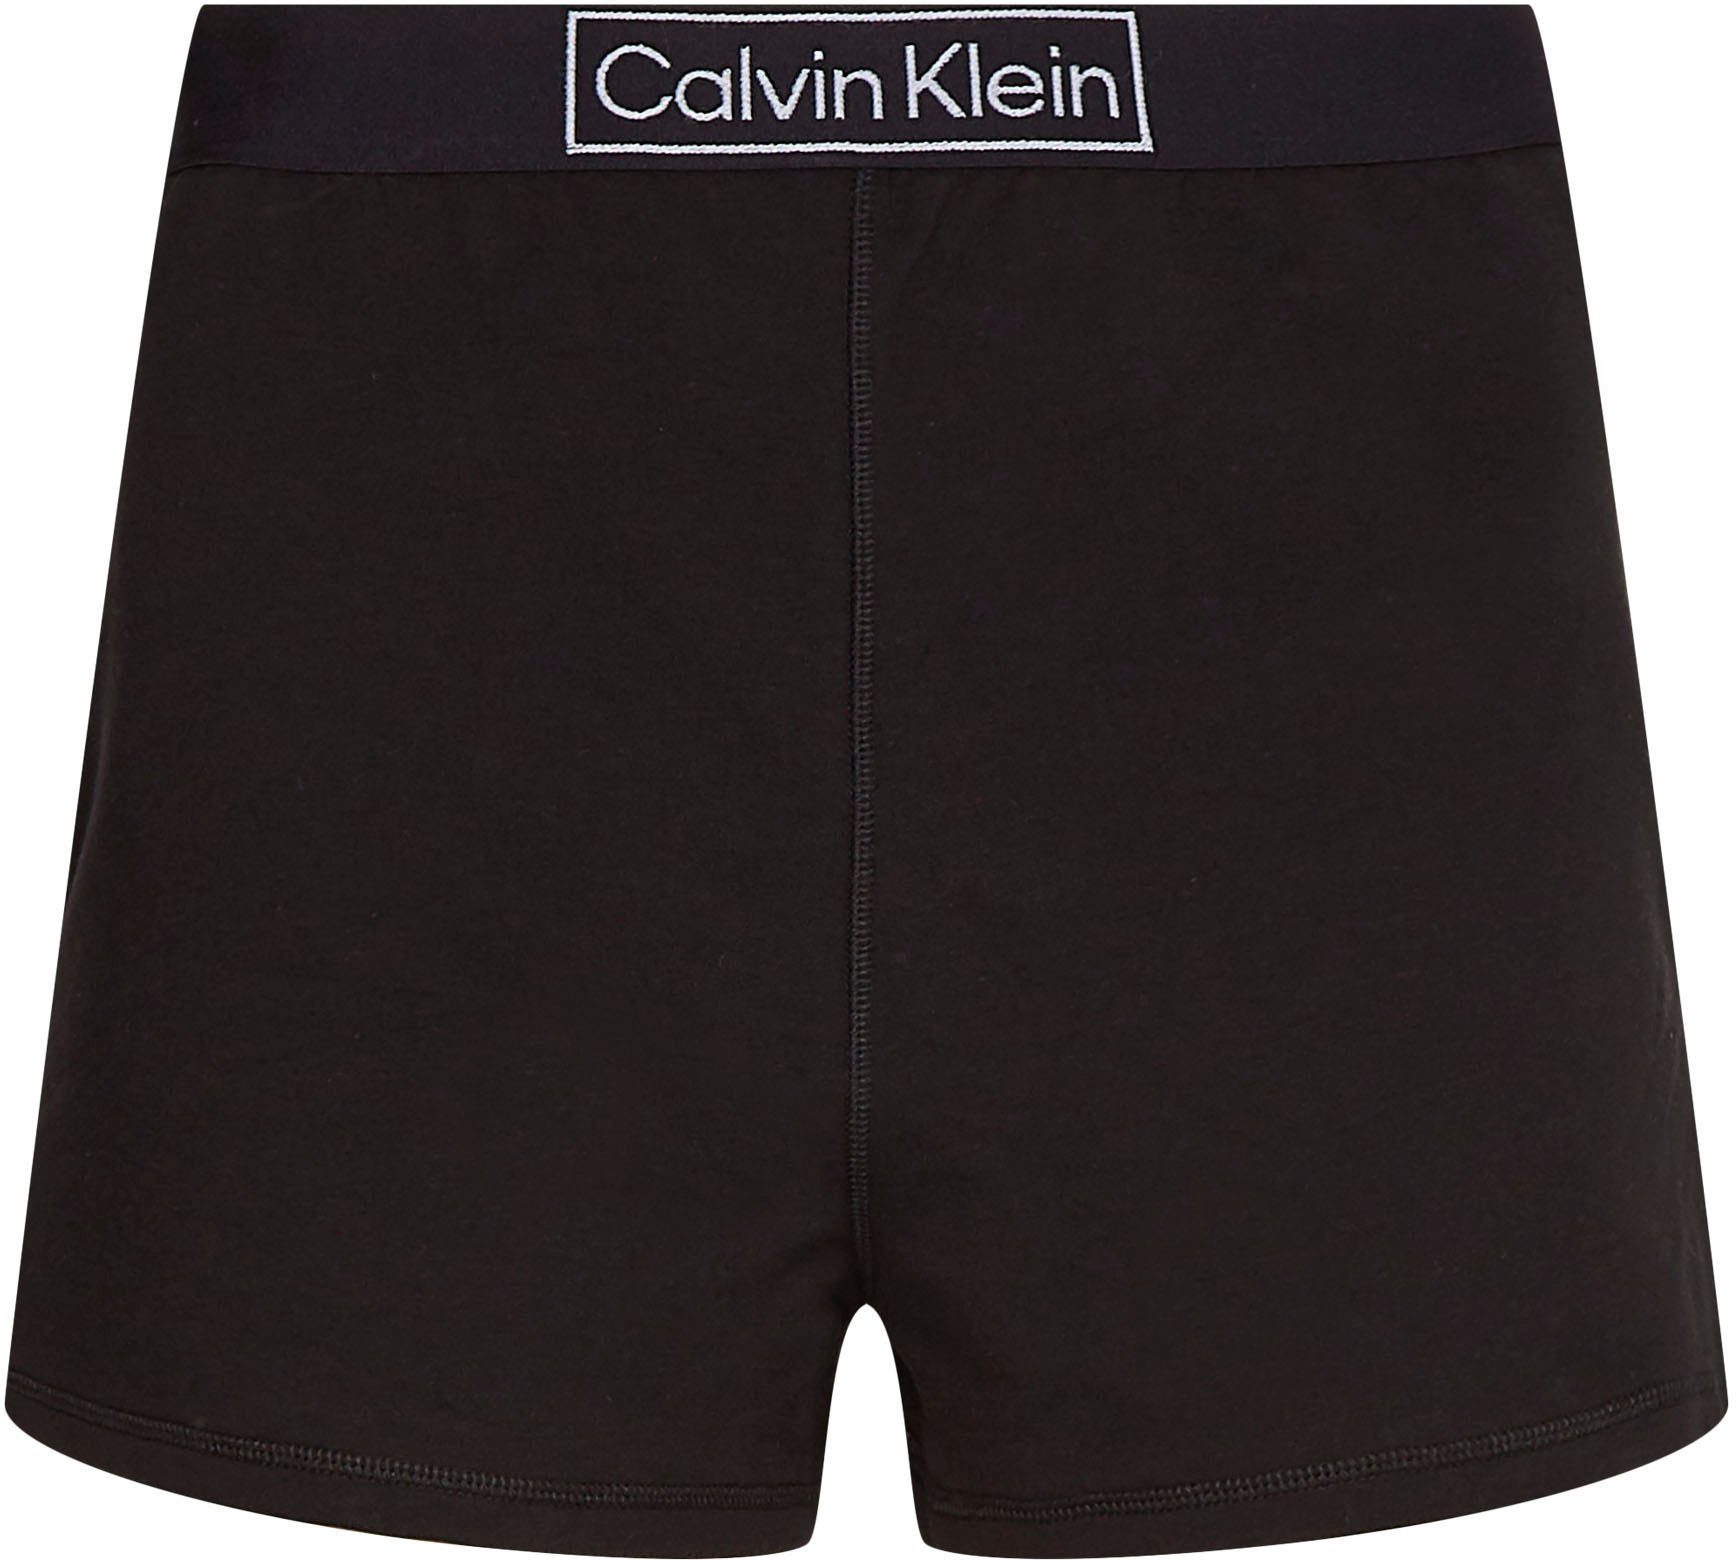 Klein Schlafshorts bequemen Underwear Calvin Gummizug mit